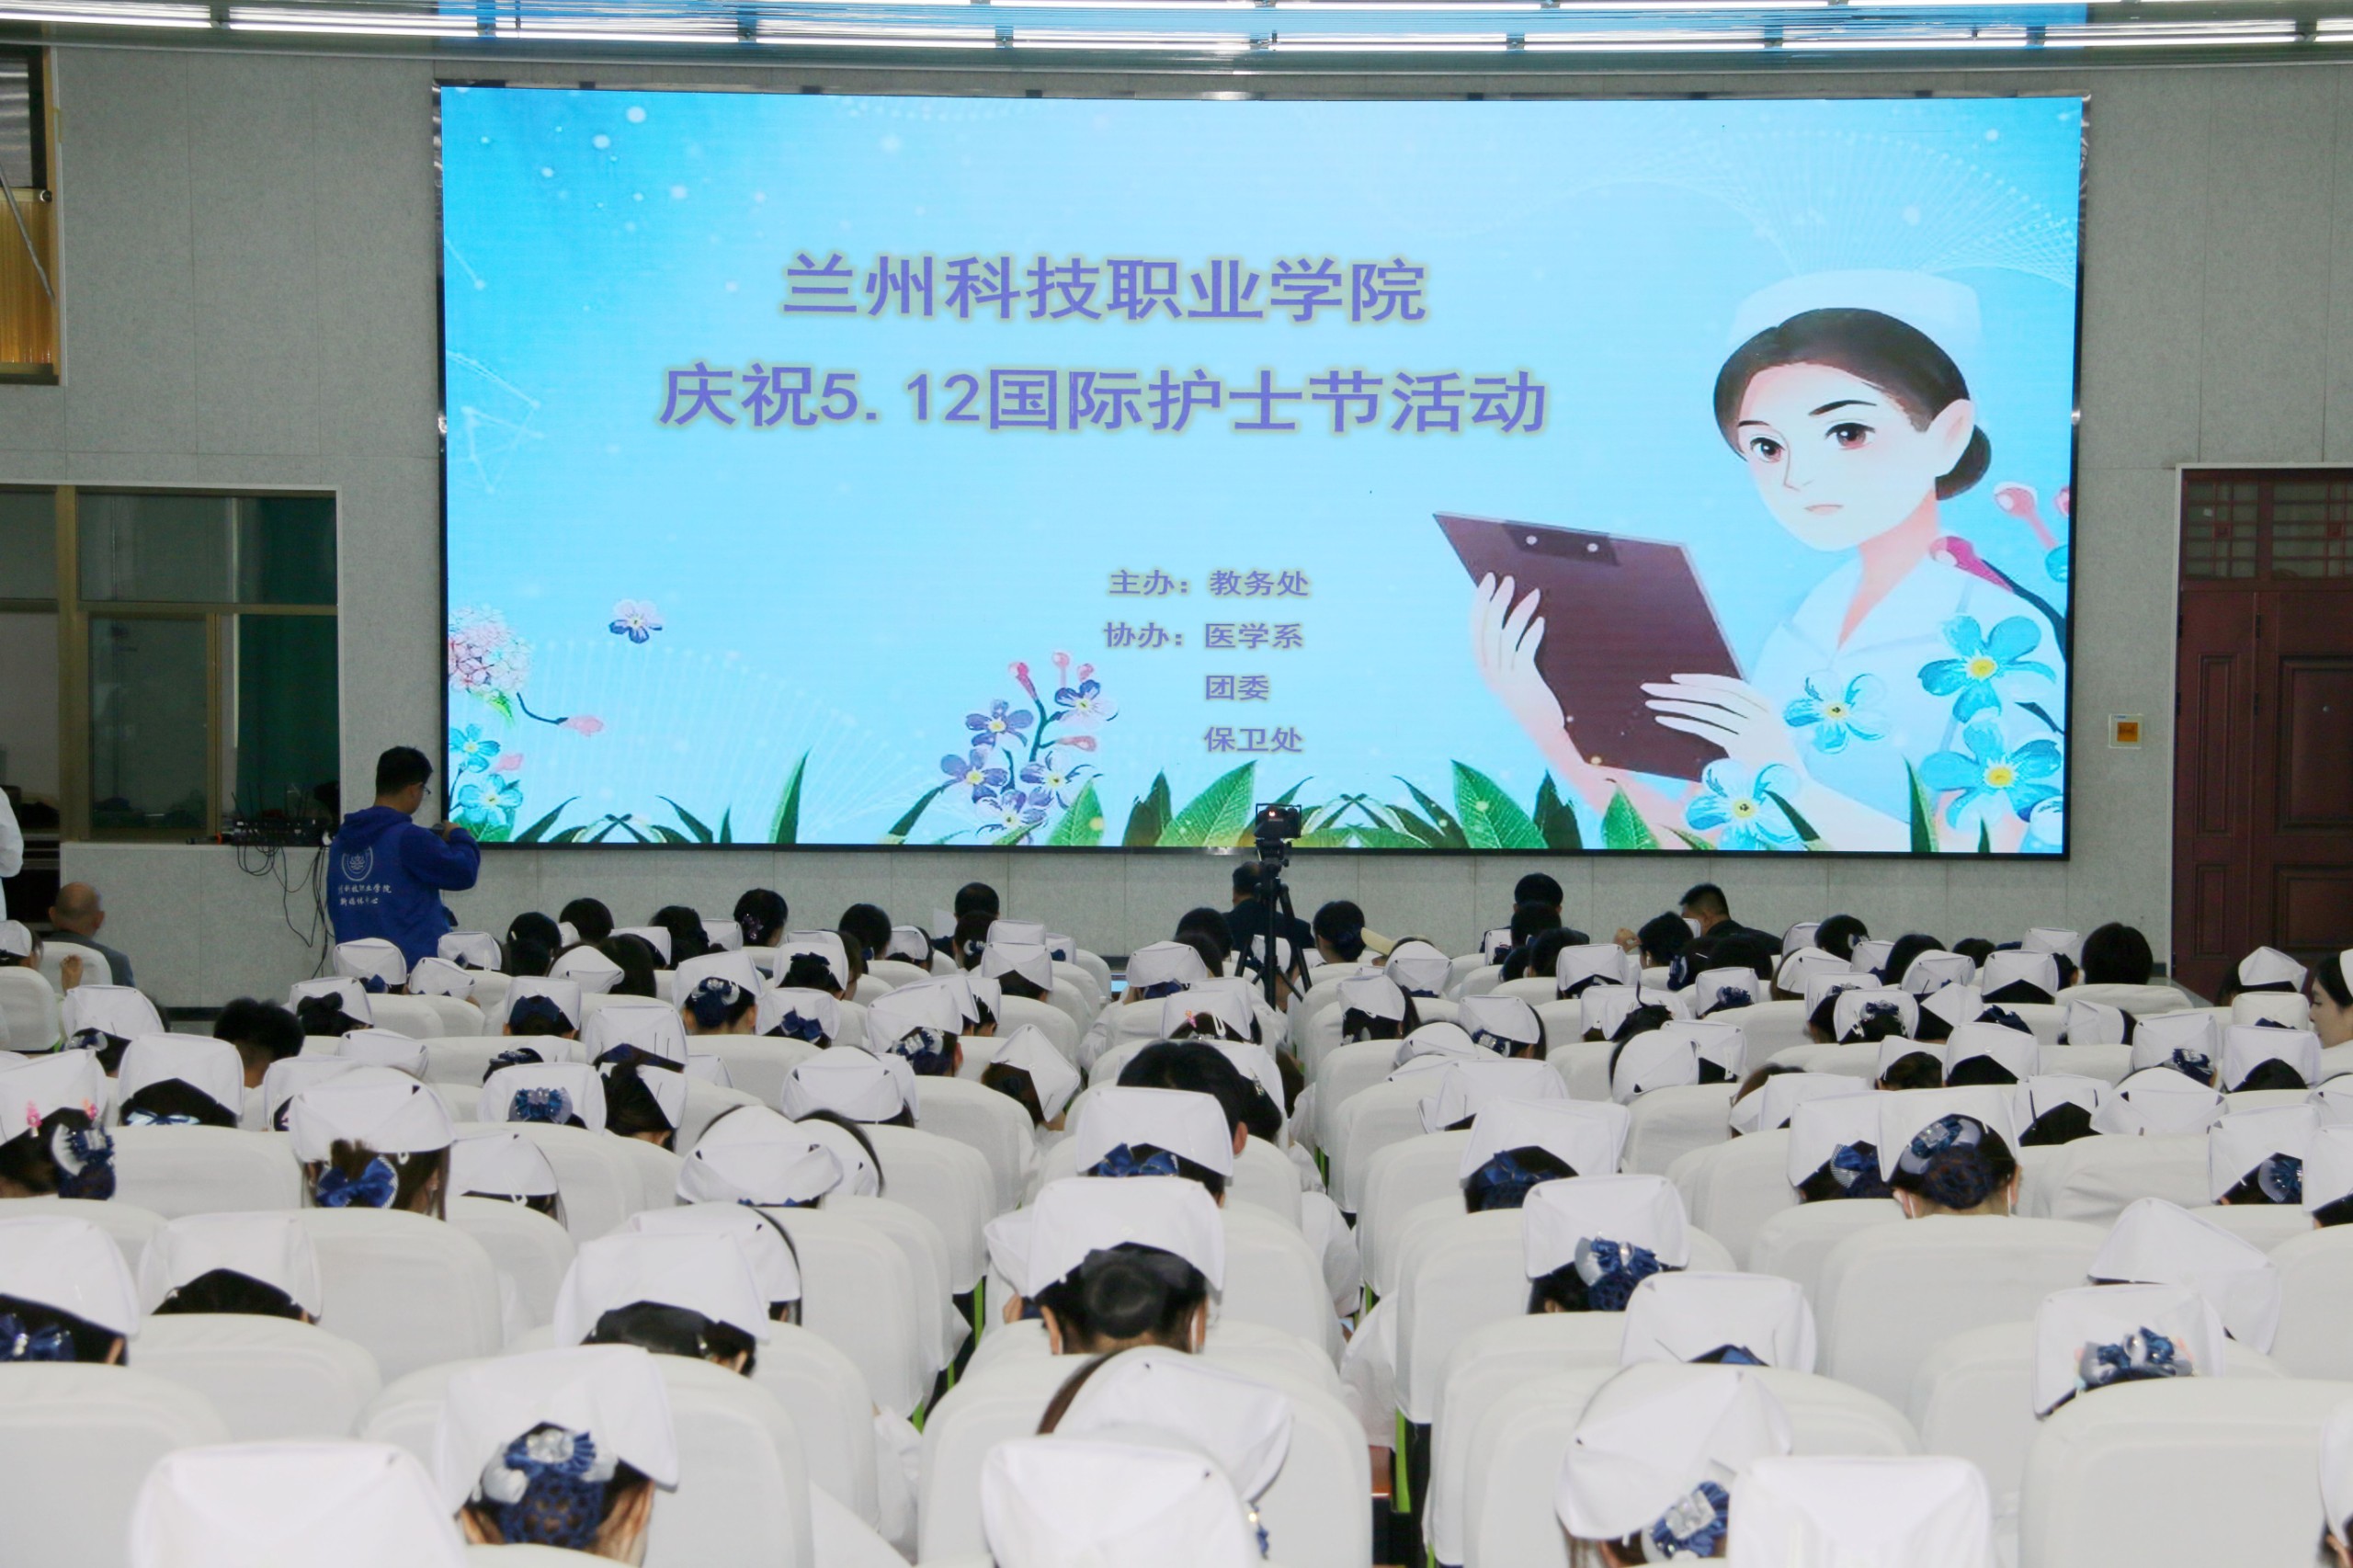 学院举办庆祝“5.12国际护士节”活动